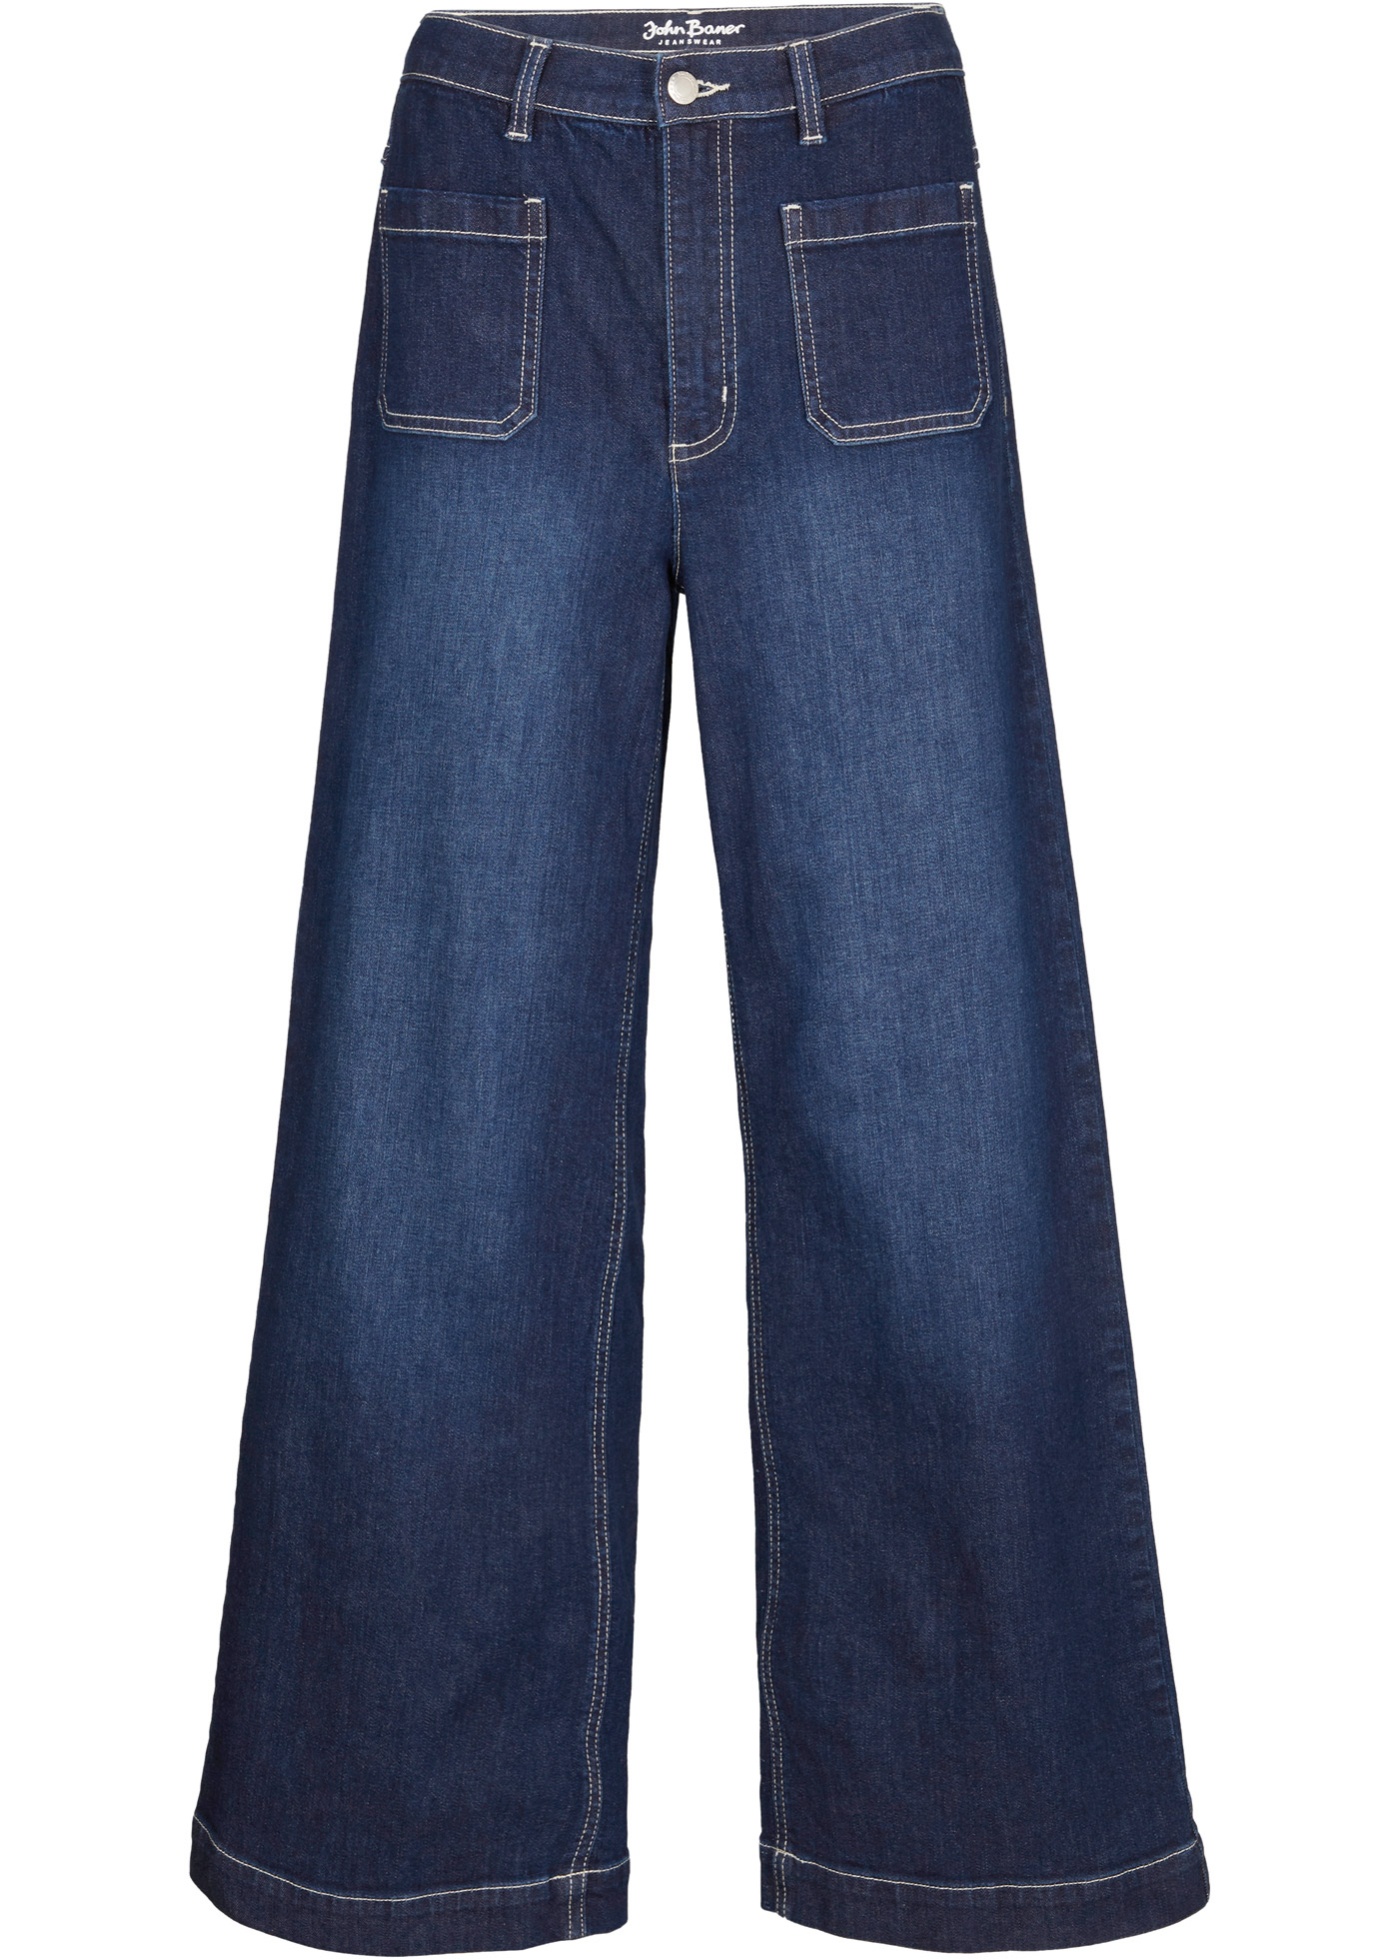 Strečové džínsy, Wide Fit, po členky, Positive Denim 1 Fabric